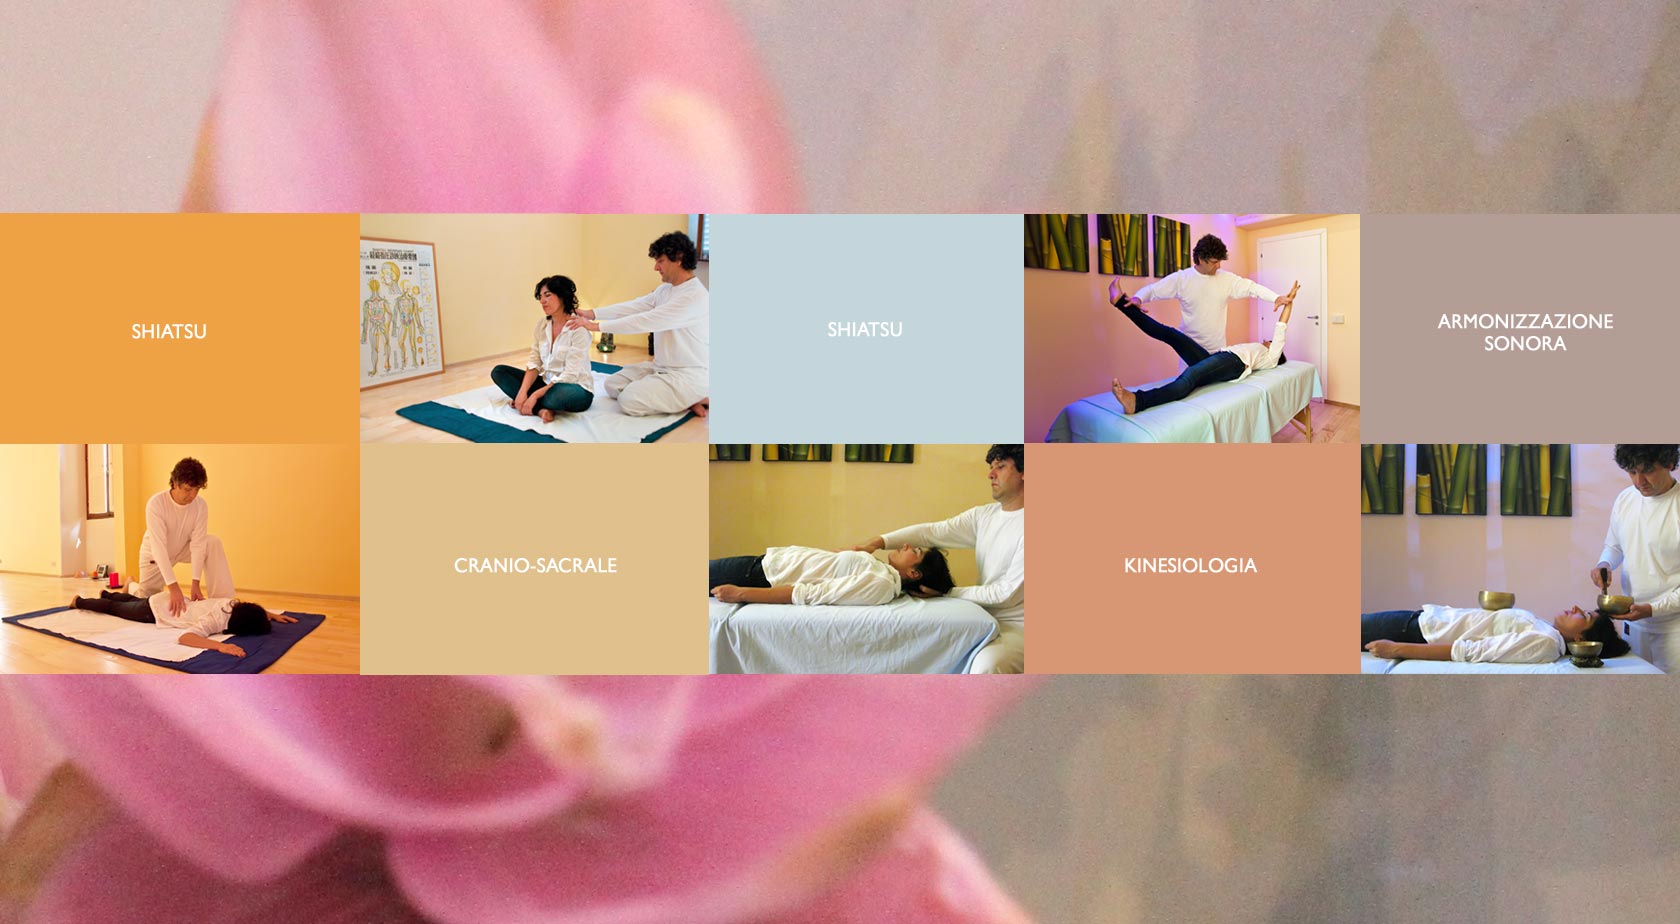 trattamenti benessere naturale - shiatsu, ctanio-sacrale, kinesiologia, armonizzazione sonora